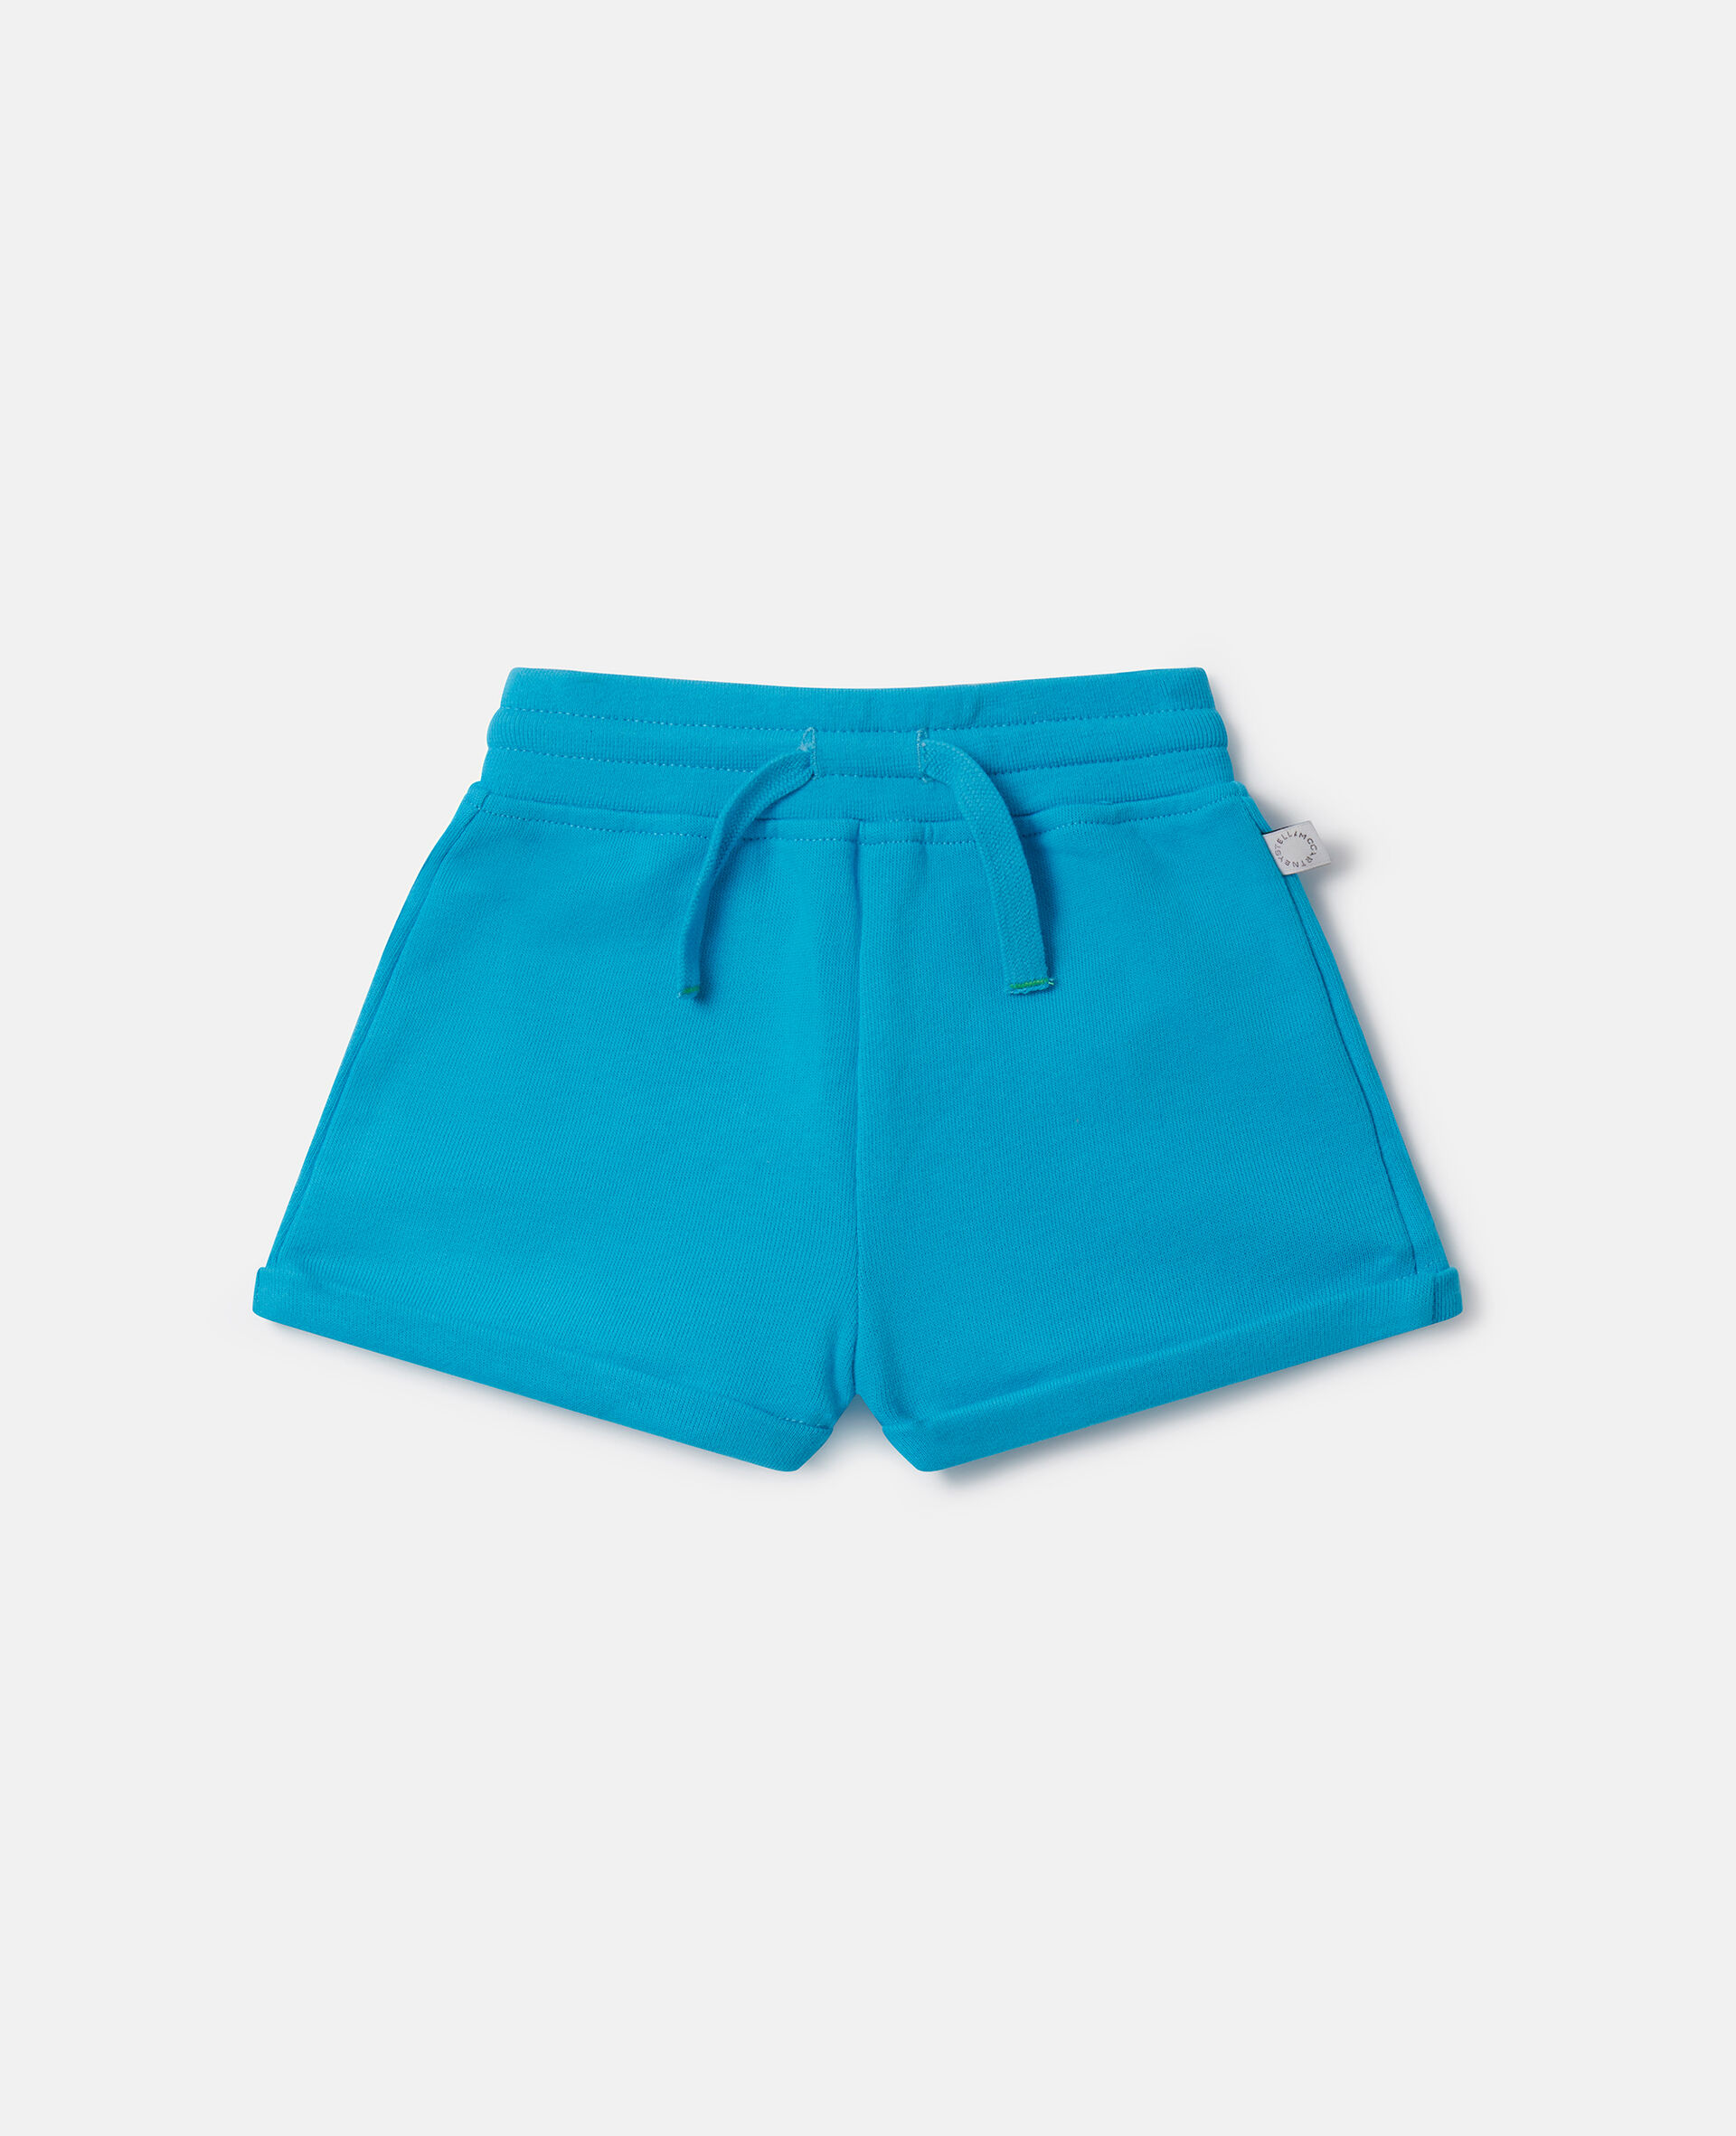 Drawstring Shorts-ブルー-medium